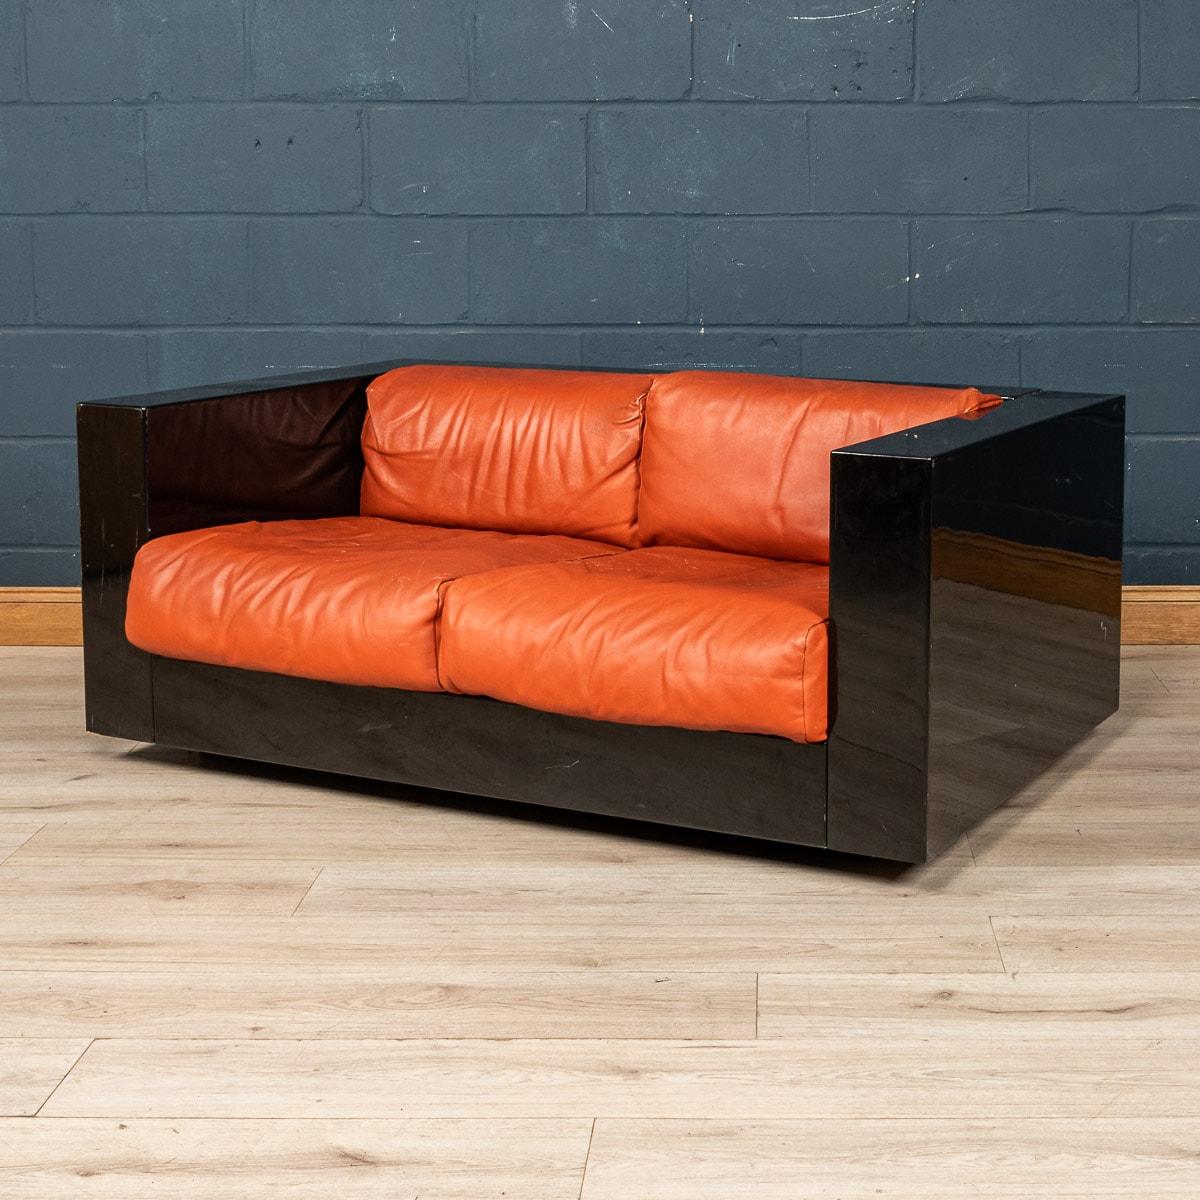 Un joli canapé deux places conçu par le couple de designers italiens Lella et Massimo Vignelli. Fabriqué par l'entreprise florentine Poltronova, ce canapé est un classique du design, avec une merveilleuse combinaison de noir et de rouge pour la